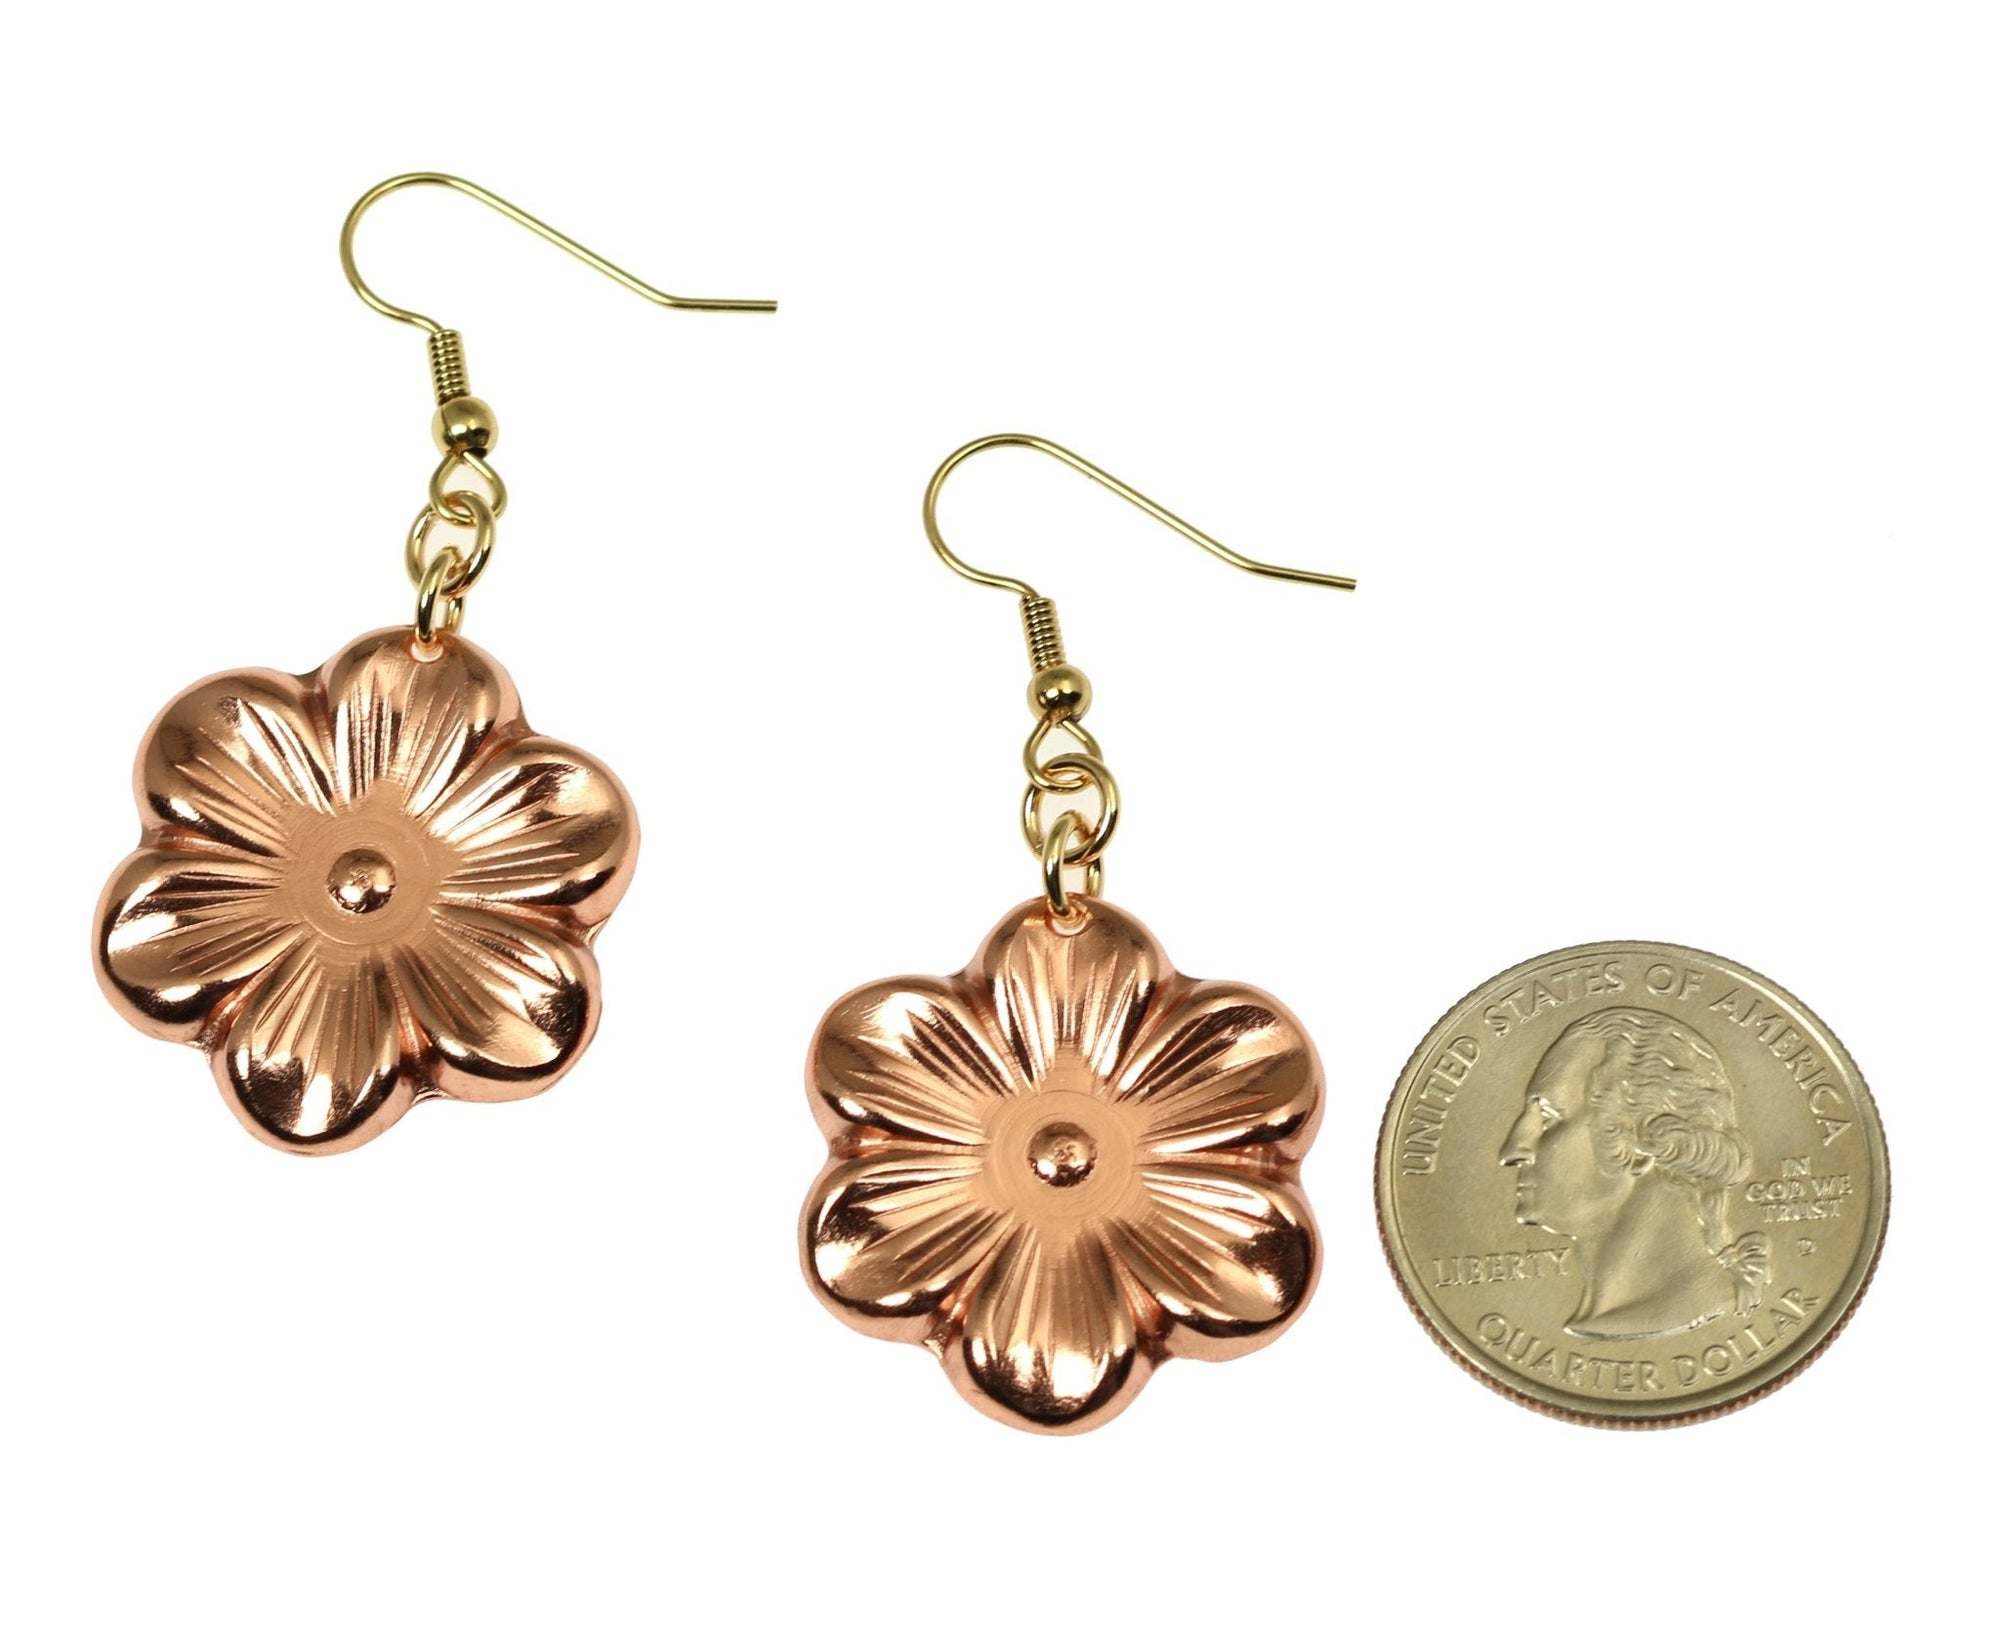 Size of Copper Cherry Blossom Flower Earrings